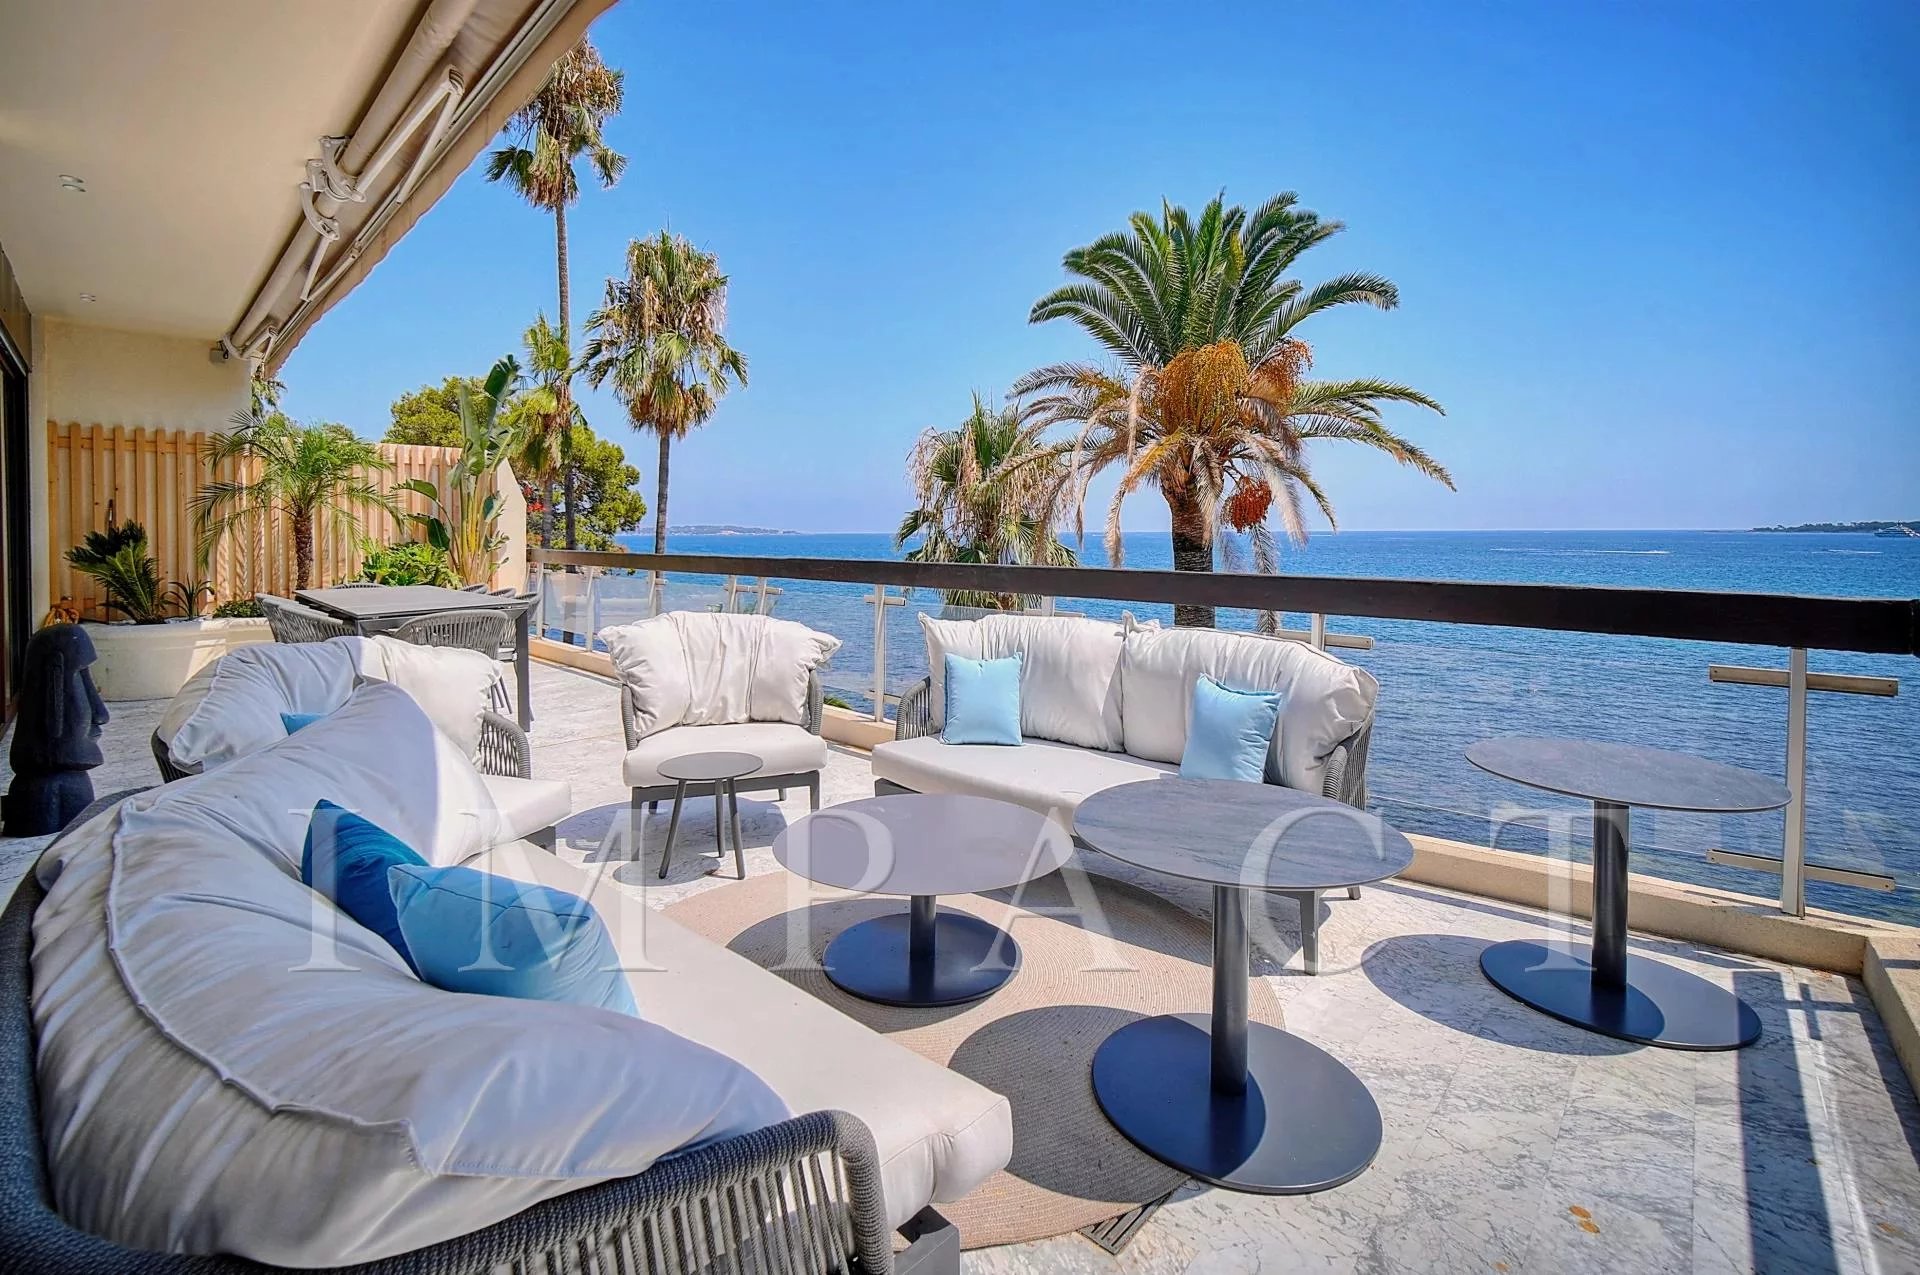 Cannes - Palm Beach - Unique waterfront penthouse